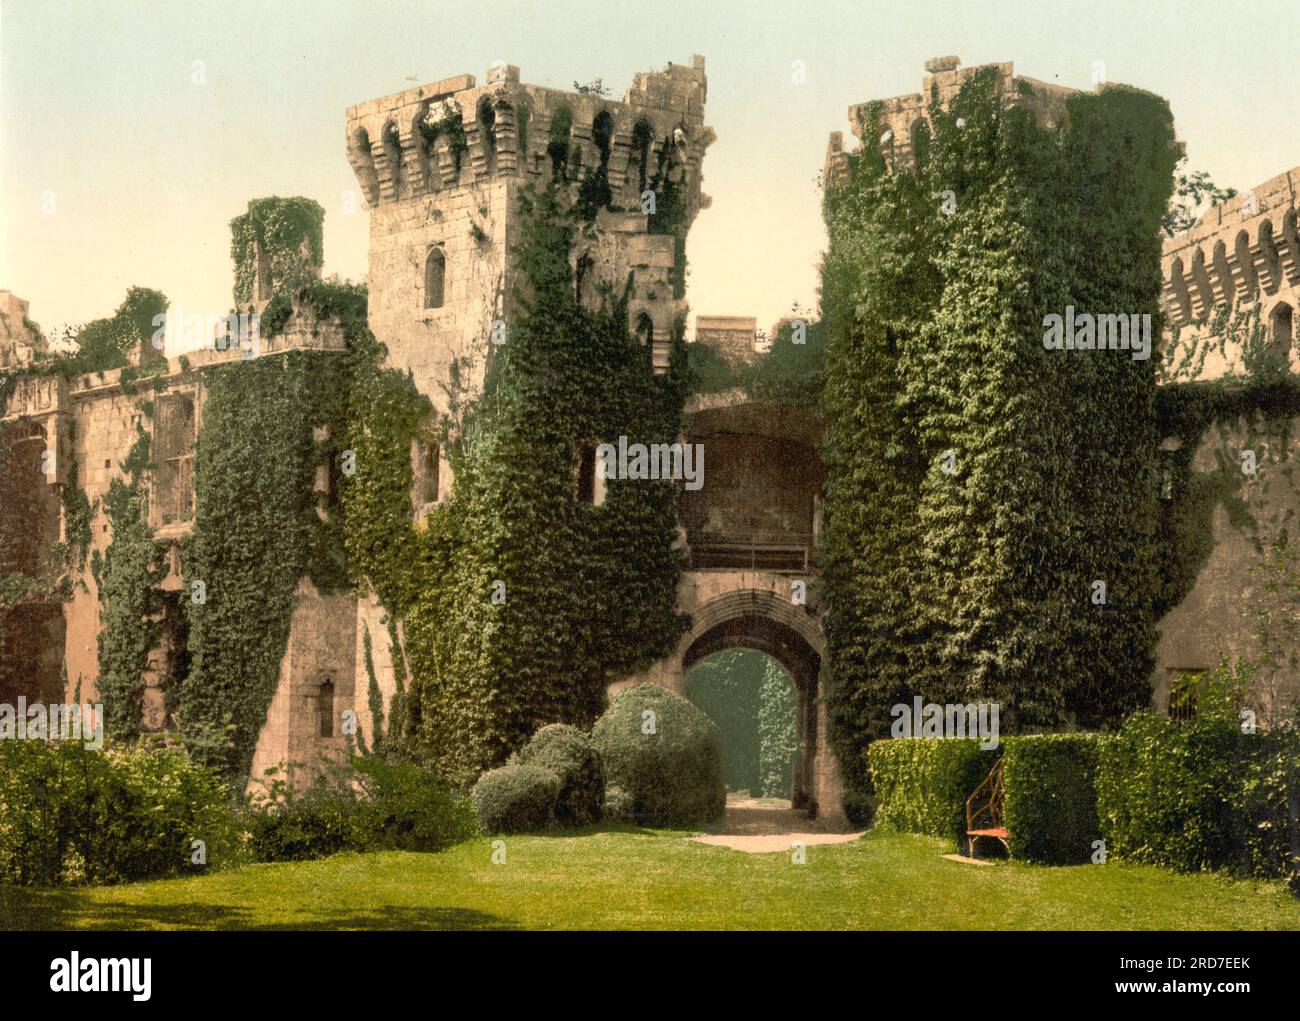 Château de Raglan, Castell Rhaglan, un château médiéval tardif situé juste au nord du village de Raglan dans le comté de Monmouthshire dans le sud-est du pays de Galles, Grande-Bretagne, 1895, reproduction historique, numérique améliorée d'une ancienne gravure photochrome Banque D'Images